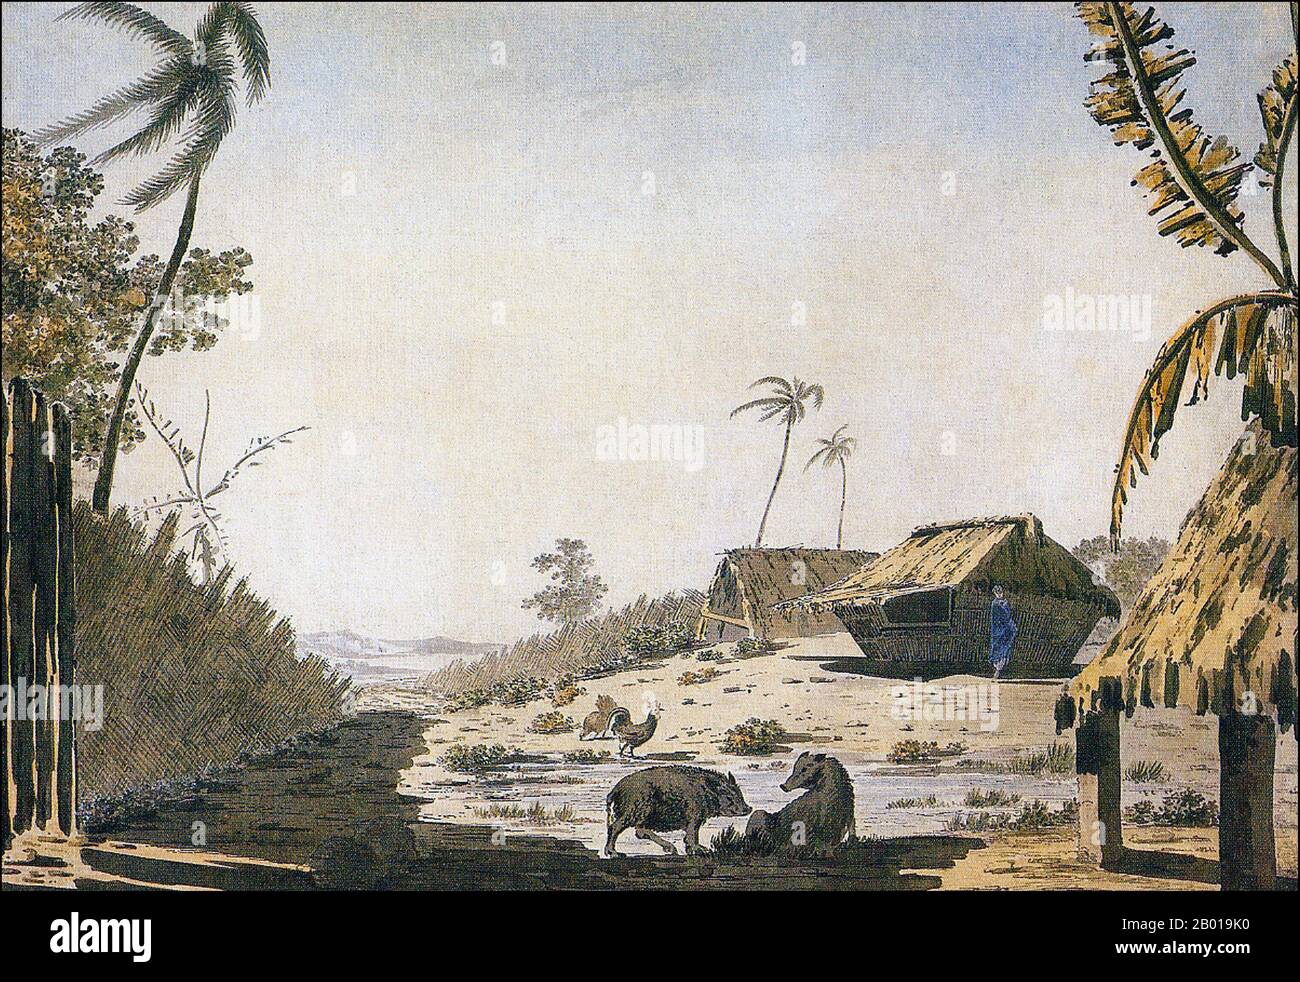 Tonga: 'Tongatabu oder Amsterdam Island'. Öl auf Leinwand Gemälde von William Hodges (28. Oktober 1744 - 6. März 1797), c. 1774. William Hodges war ein englischer Maler. Er war Mitglied von James Cooks zweiter Reise in den Pazifischen Ozean und ist vor allem für die Skizzen und Gemälde von Orten bekannt, die er auf dieser Reise besuchte, darunter die Tafelbucht, Tahiti, die Osterinsel und die Antarktis. Hodges begleitete Cook 1772-1775 als Künstler der Expedition in den Pazifik. Viele seiner Skizzen und Wash-Paintings wurden als Gravuren in der ursprünglich veröffentlichten Ausgabe von Cooks Journalen aus der Reise adaptiert. Stockfoto